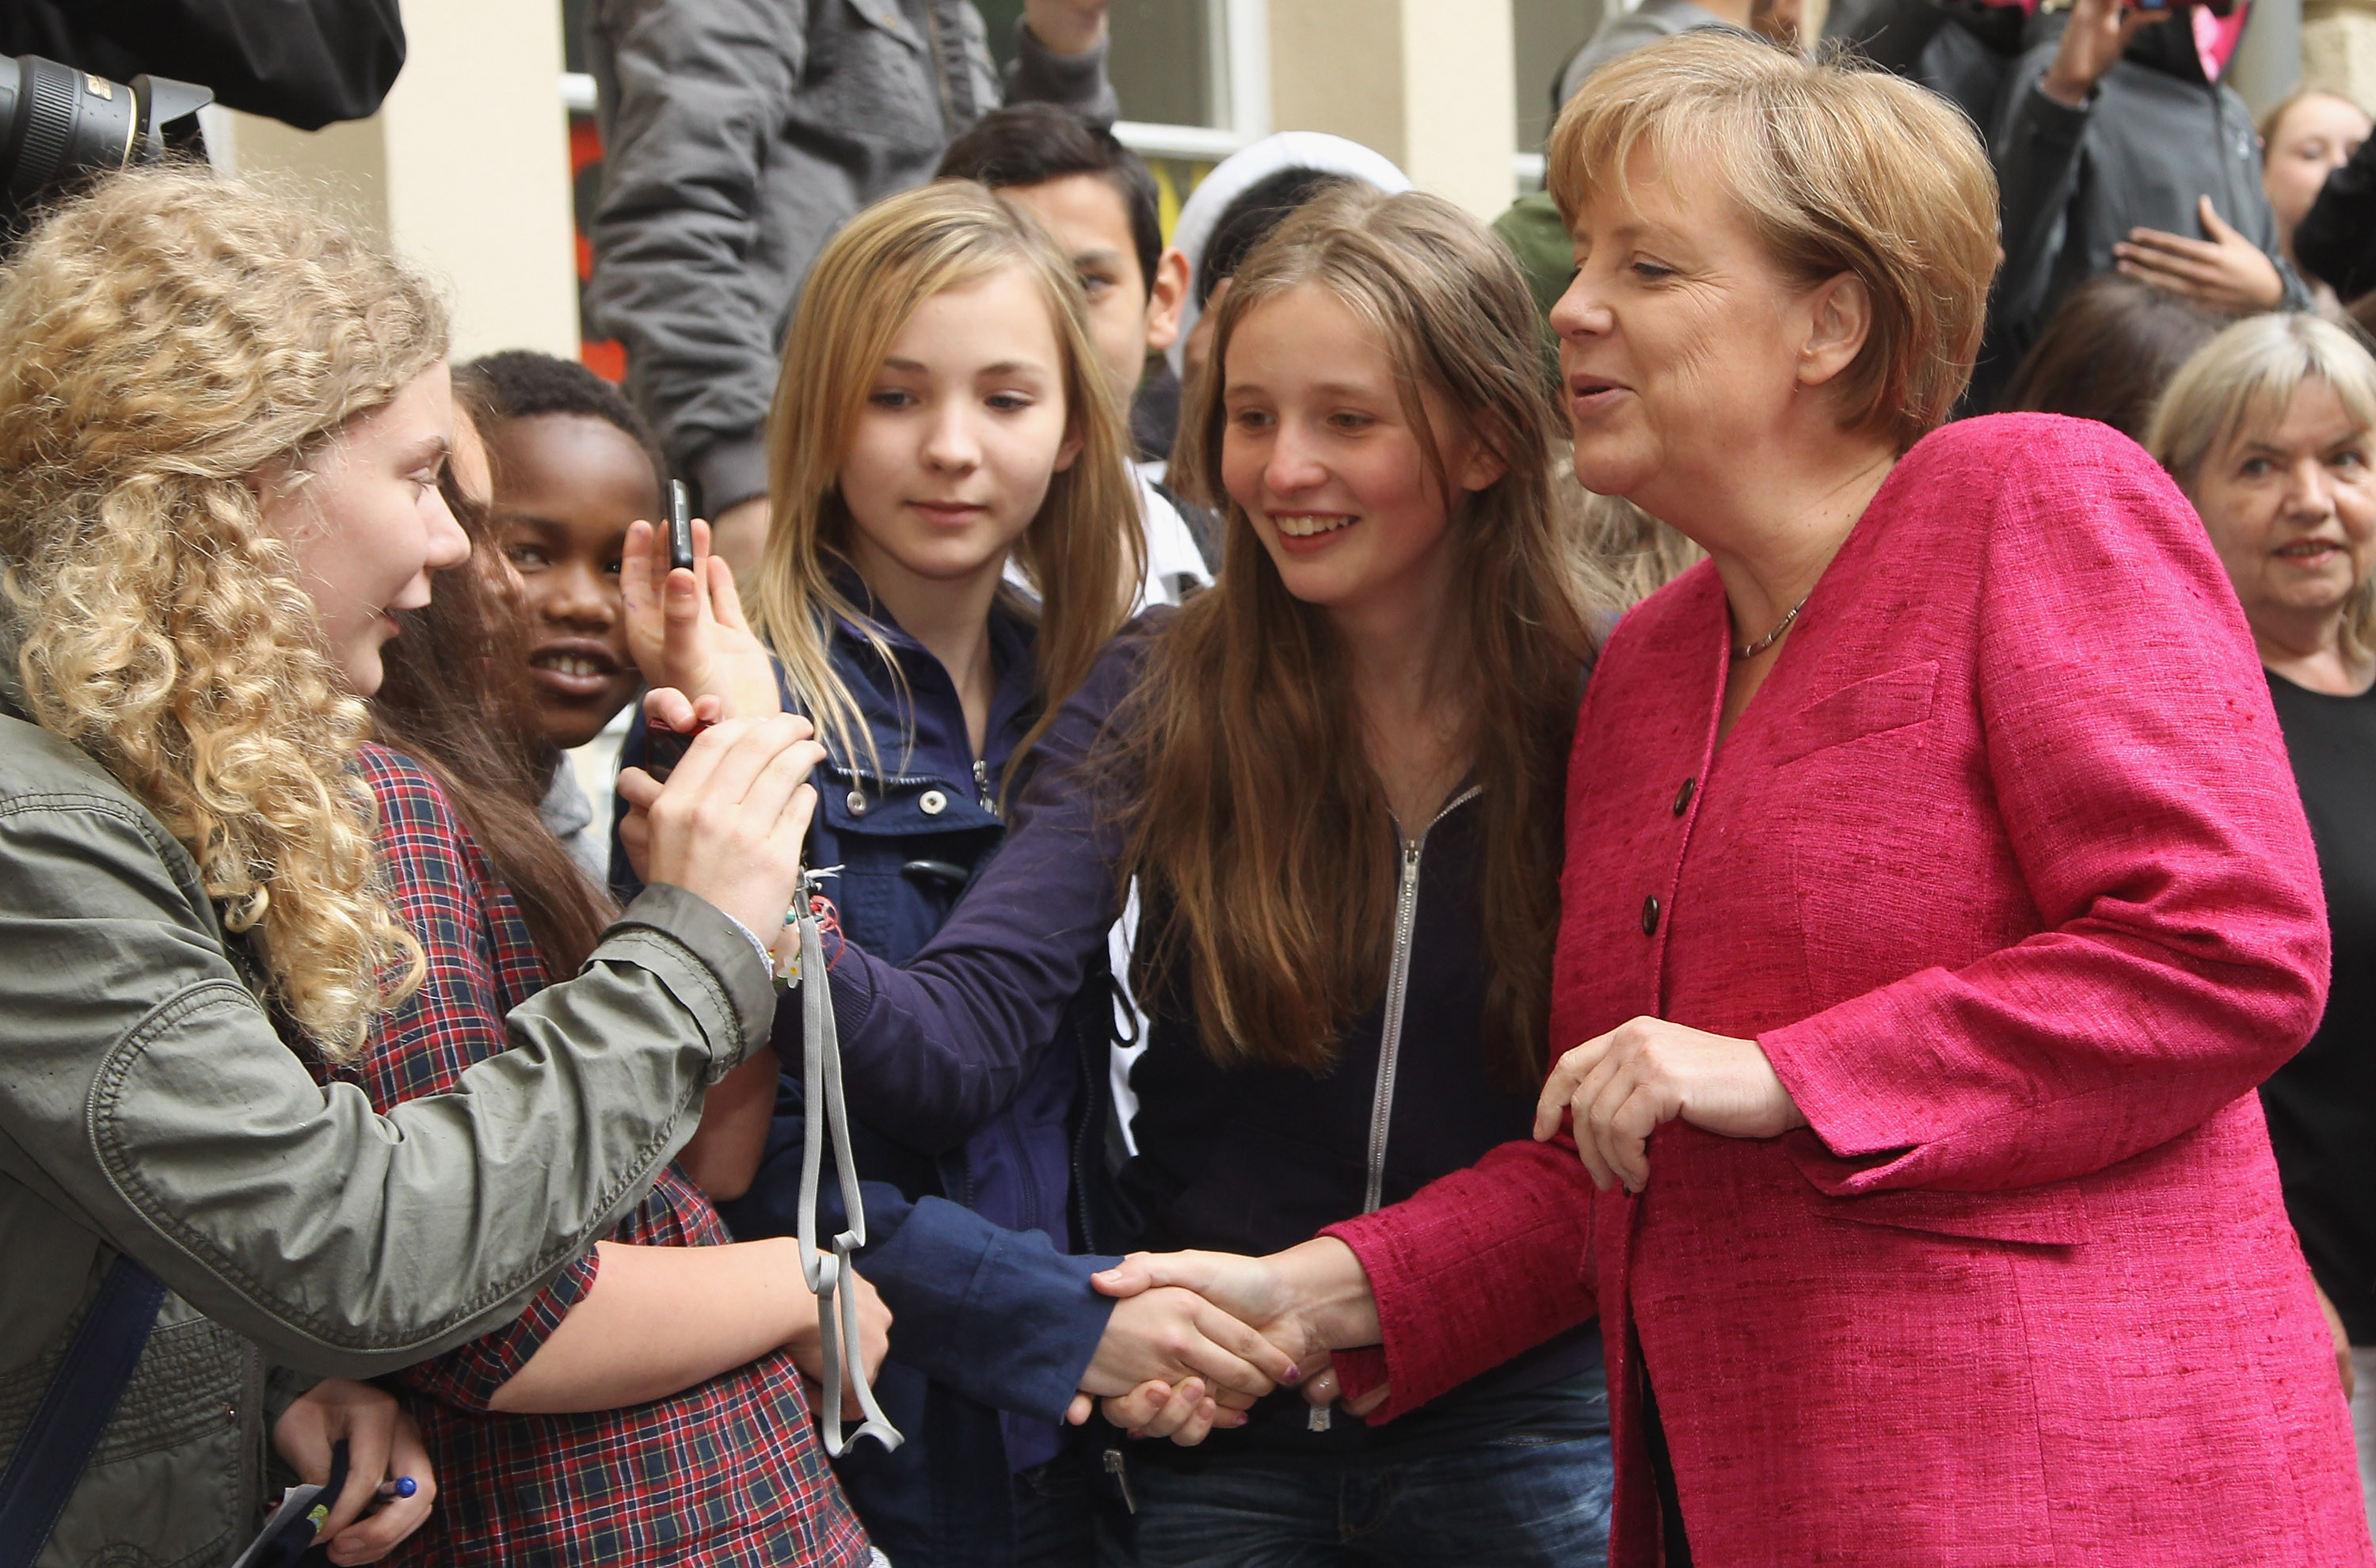 Οι νέοι της Γερμανίας θα ψηφίσουν Μέρκελ: Τι αποκαλύπτει σφυγμομέτρηση πανεπιστημίου